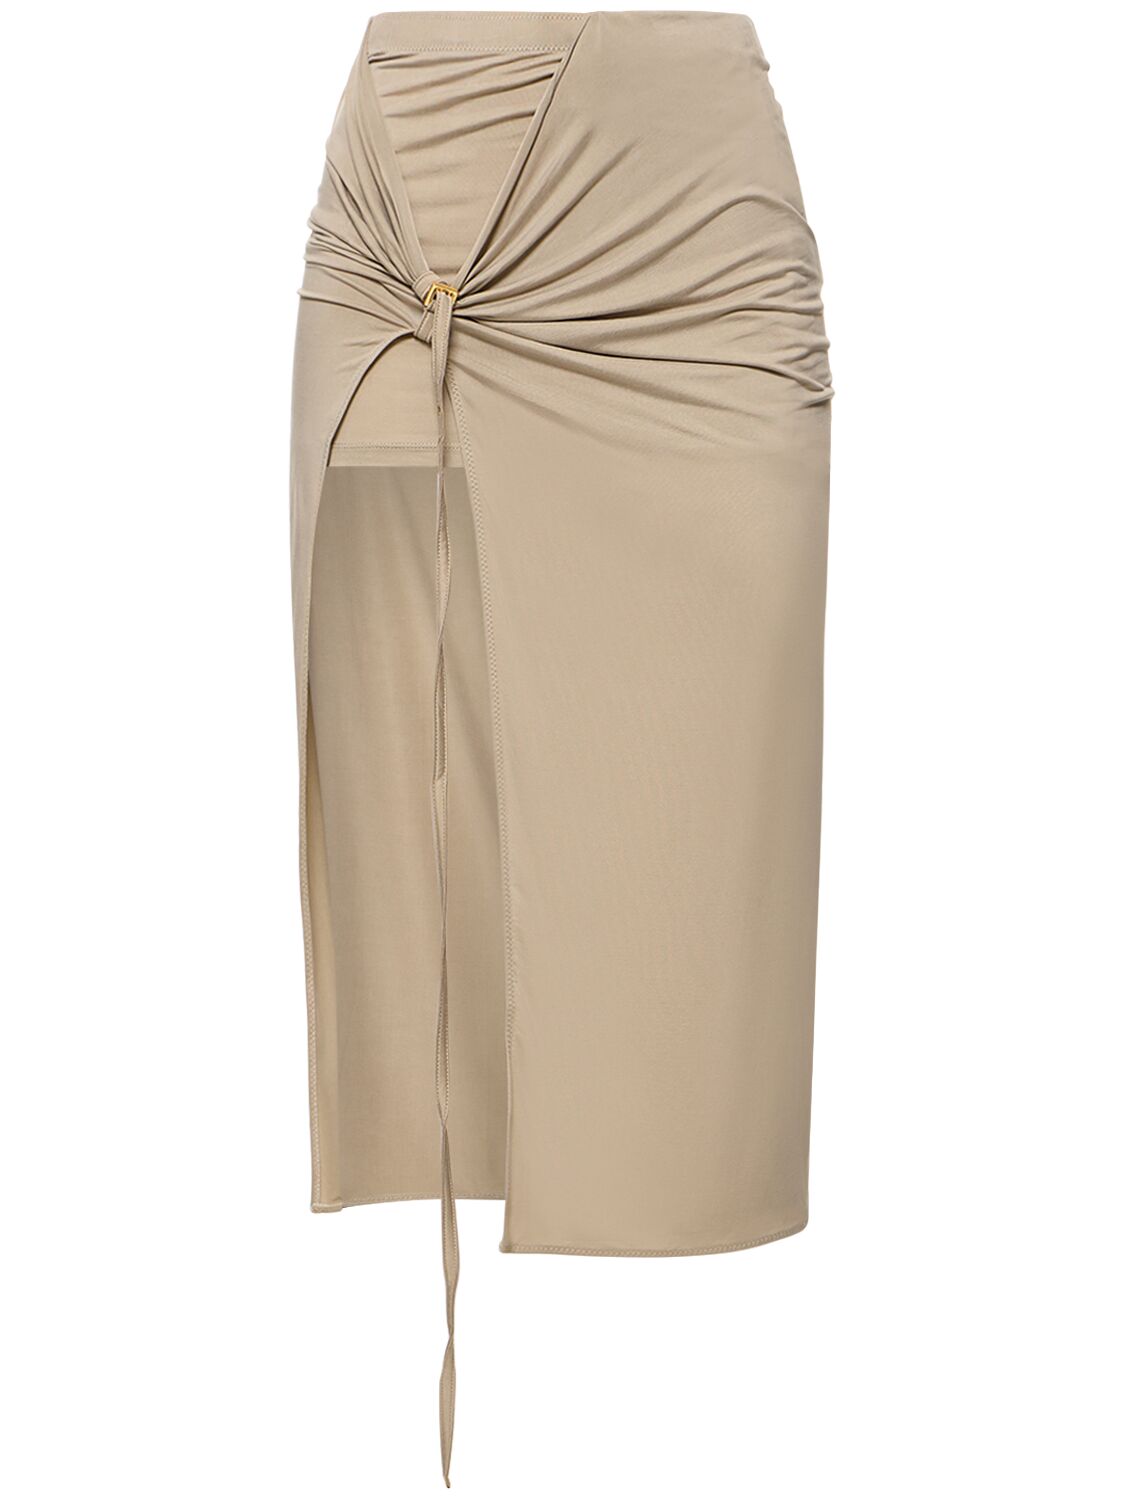 LA JUPE PAREO CROISSANT铜氨纤维围裹式半身裙